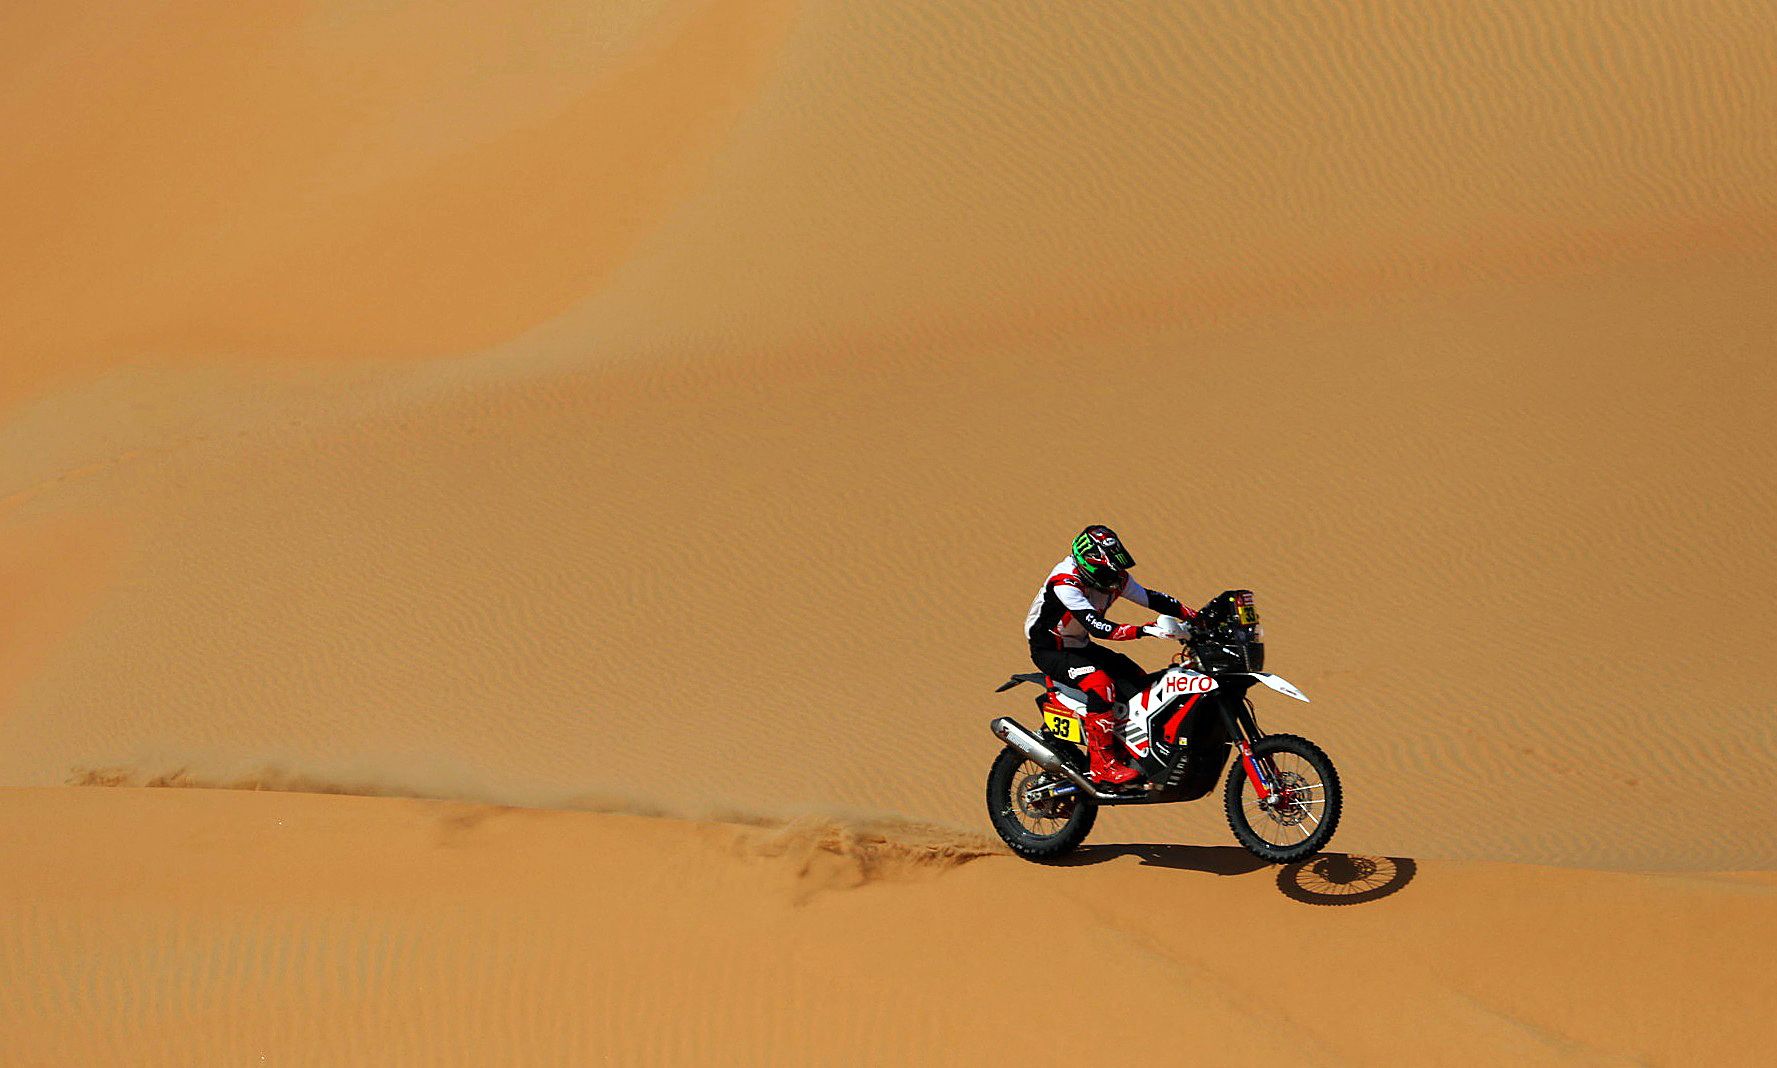 Dakar Rally (163445432).jpg